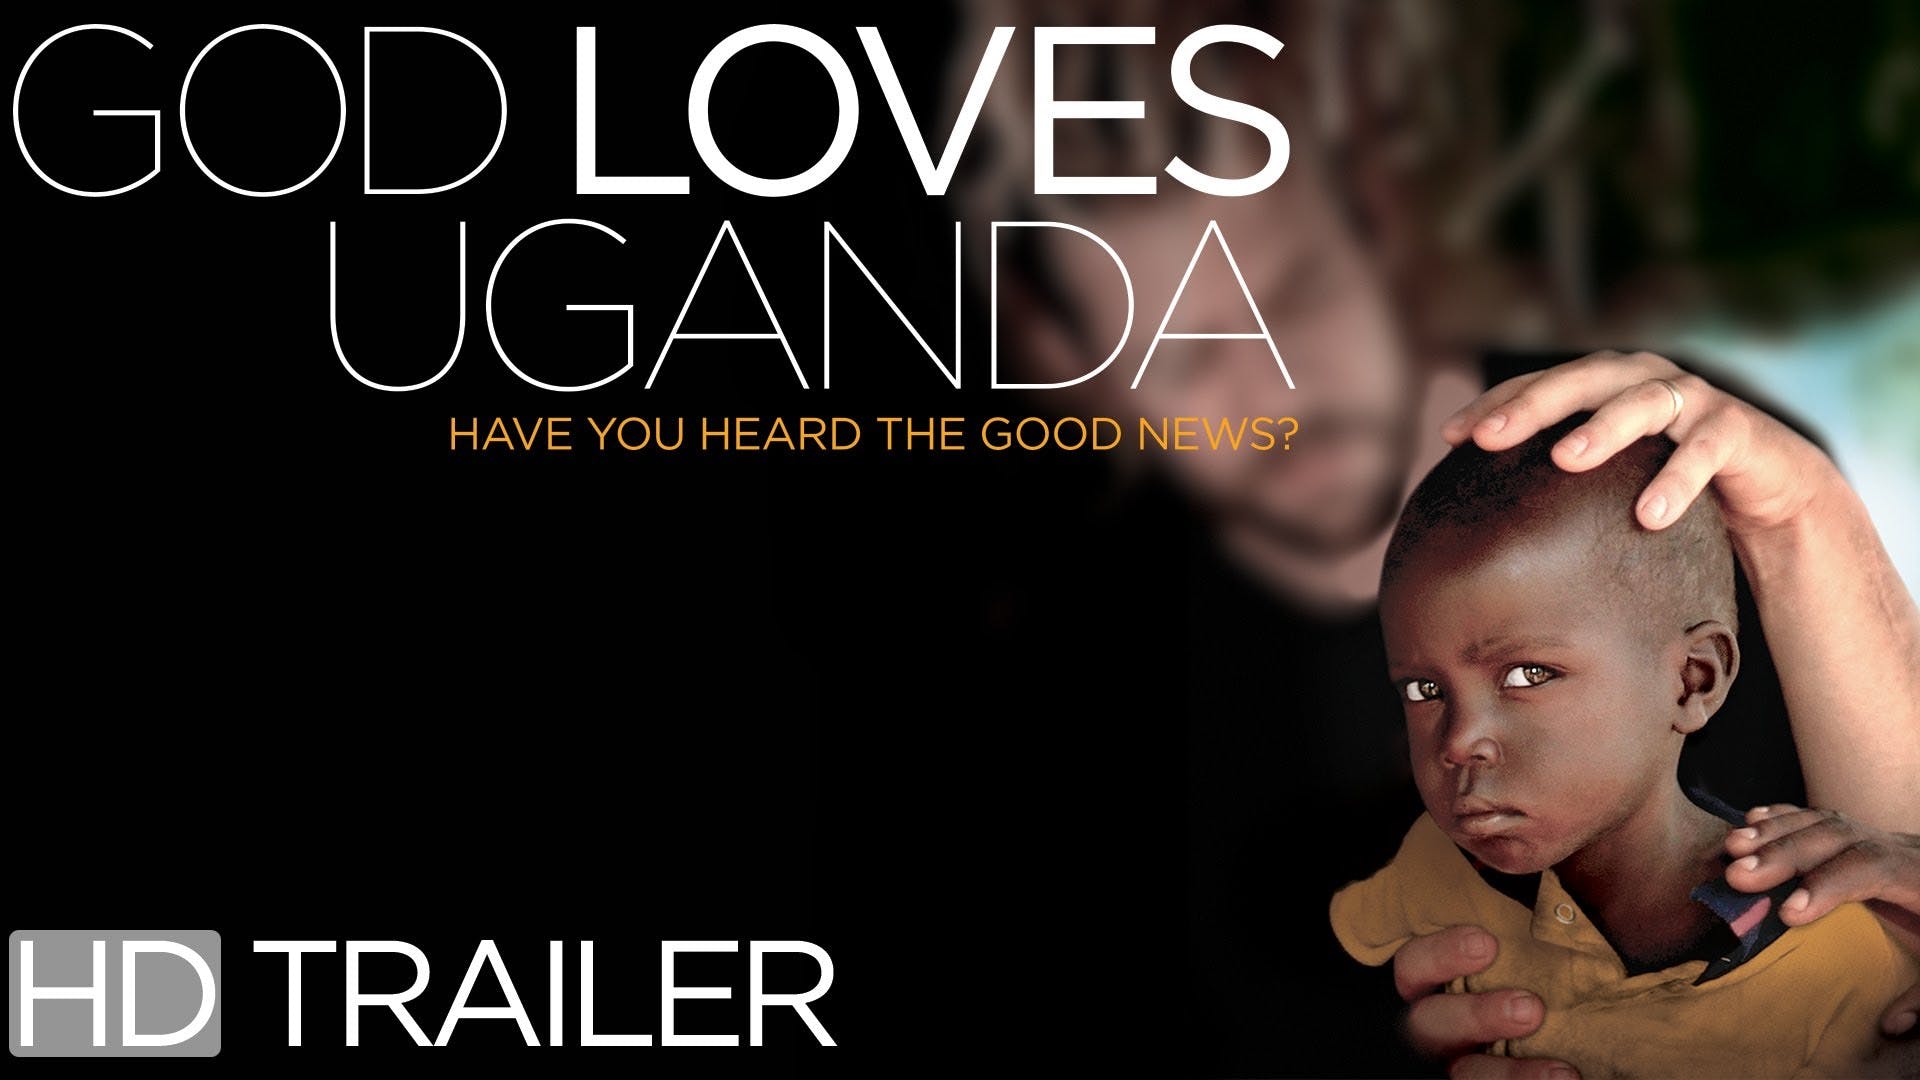 神愛烏干達 God Loves Uganda